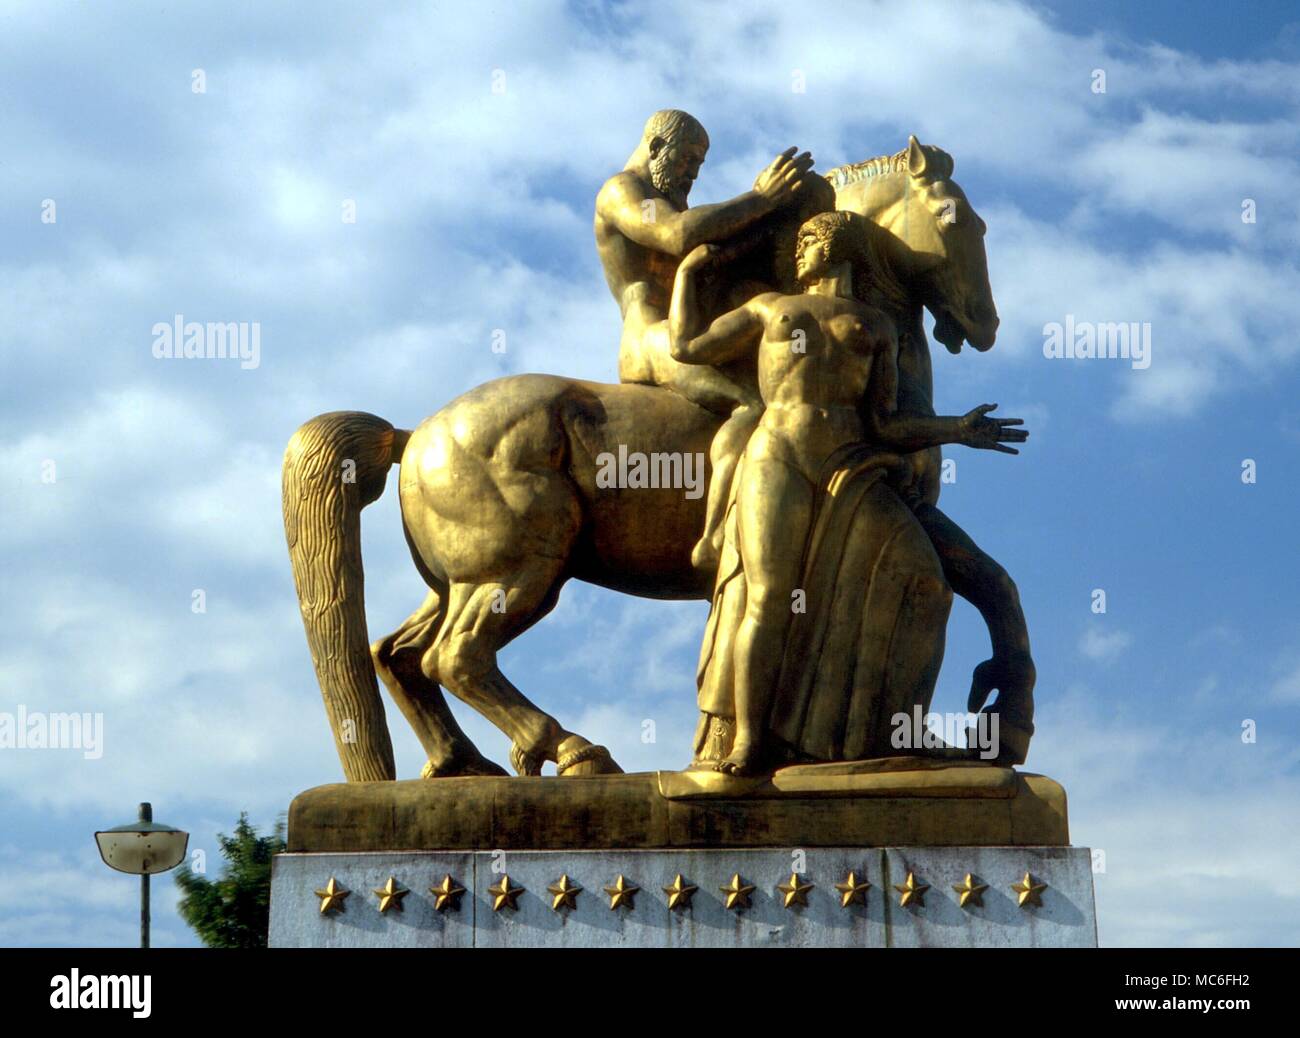 Pianeti - Marte gruppo scultoreo di Leo Friedlander in West Potomac Park, Washington DC. Le figure simboleggiano Mars (equitazione) e la messa a terra (come sacrificio) Foto Stock